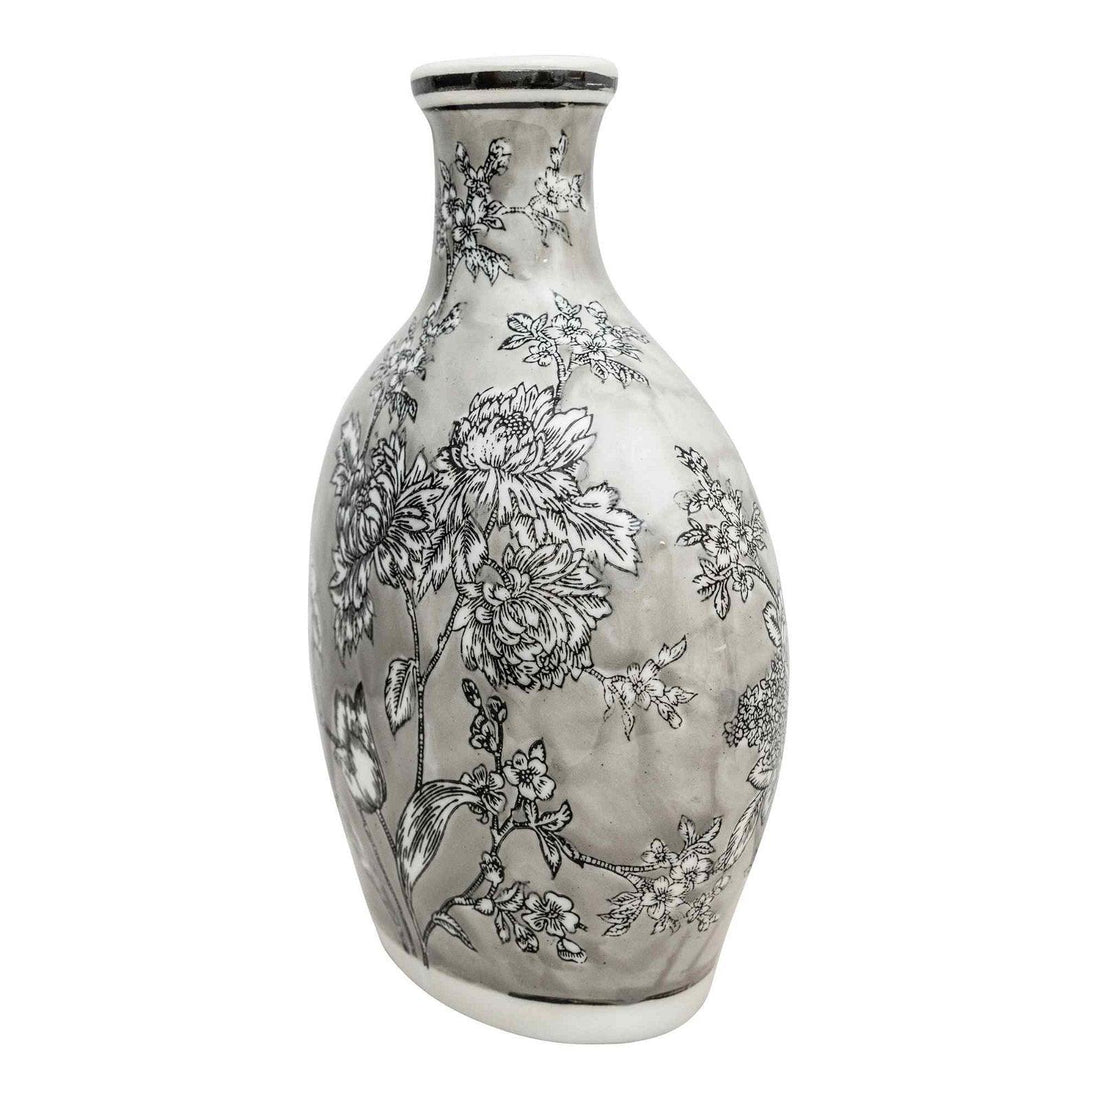 Peony Grey & White Bottle Vase - £70.99 - Vases 